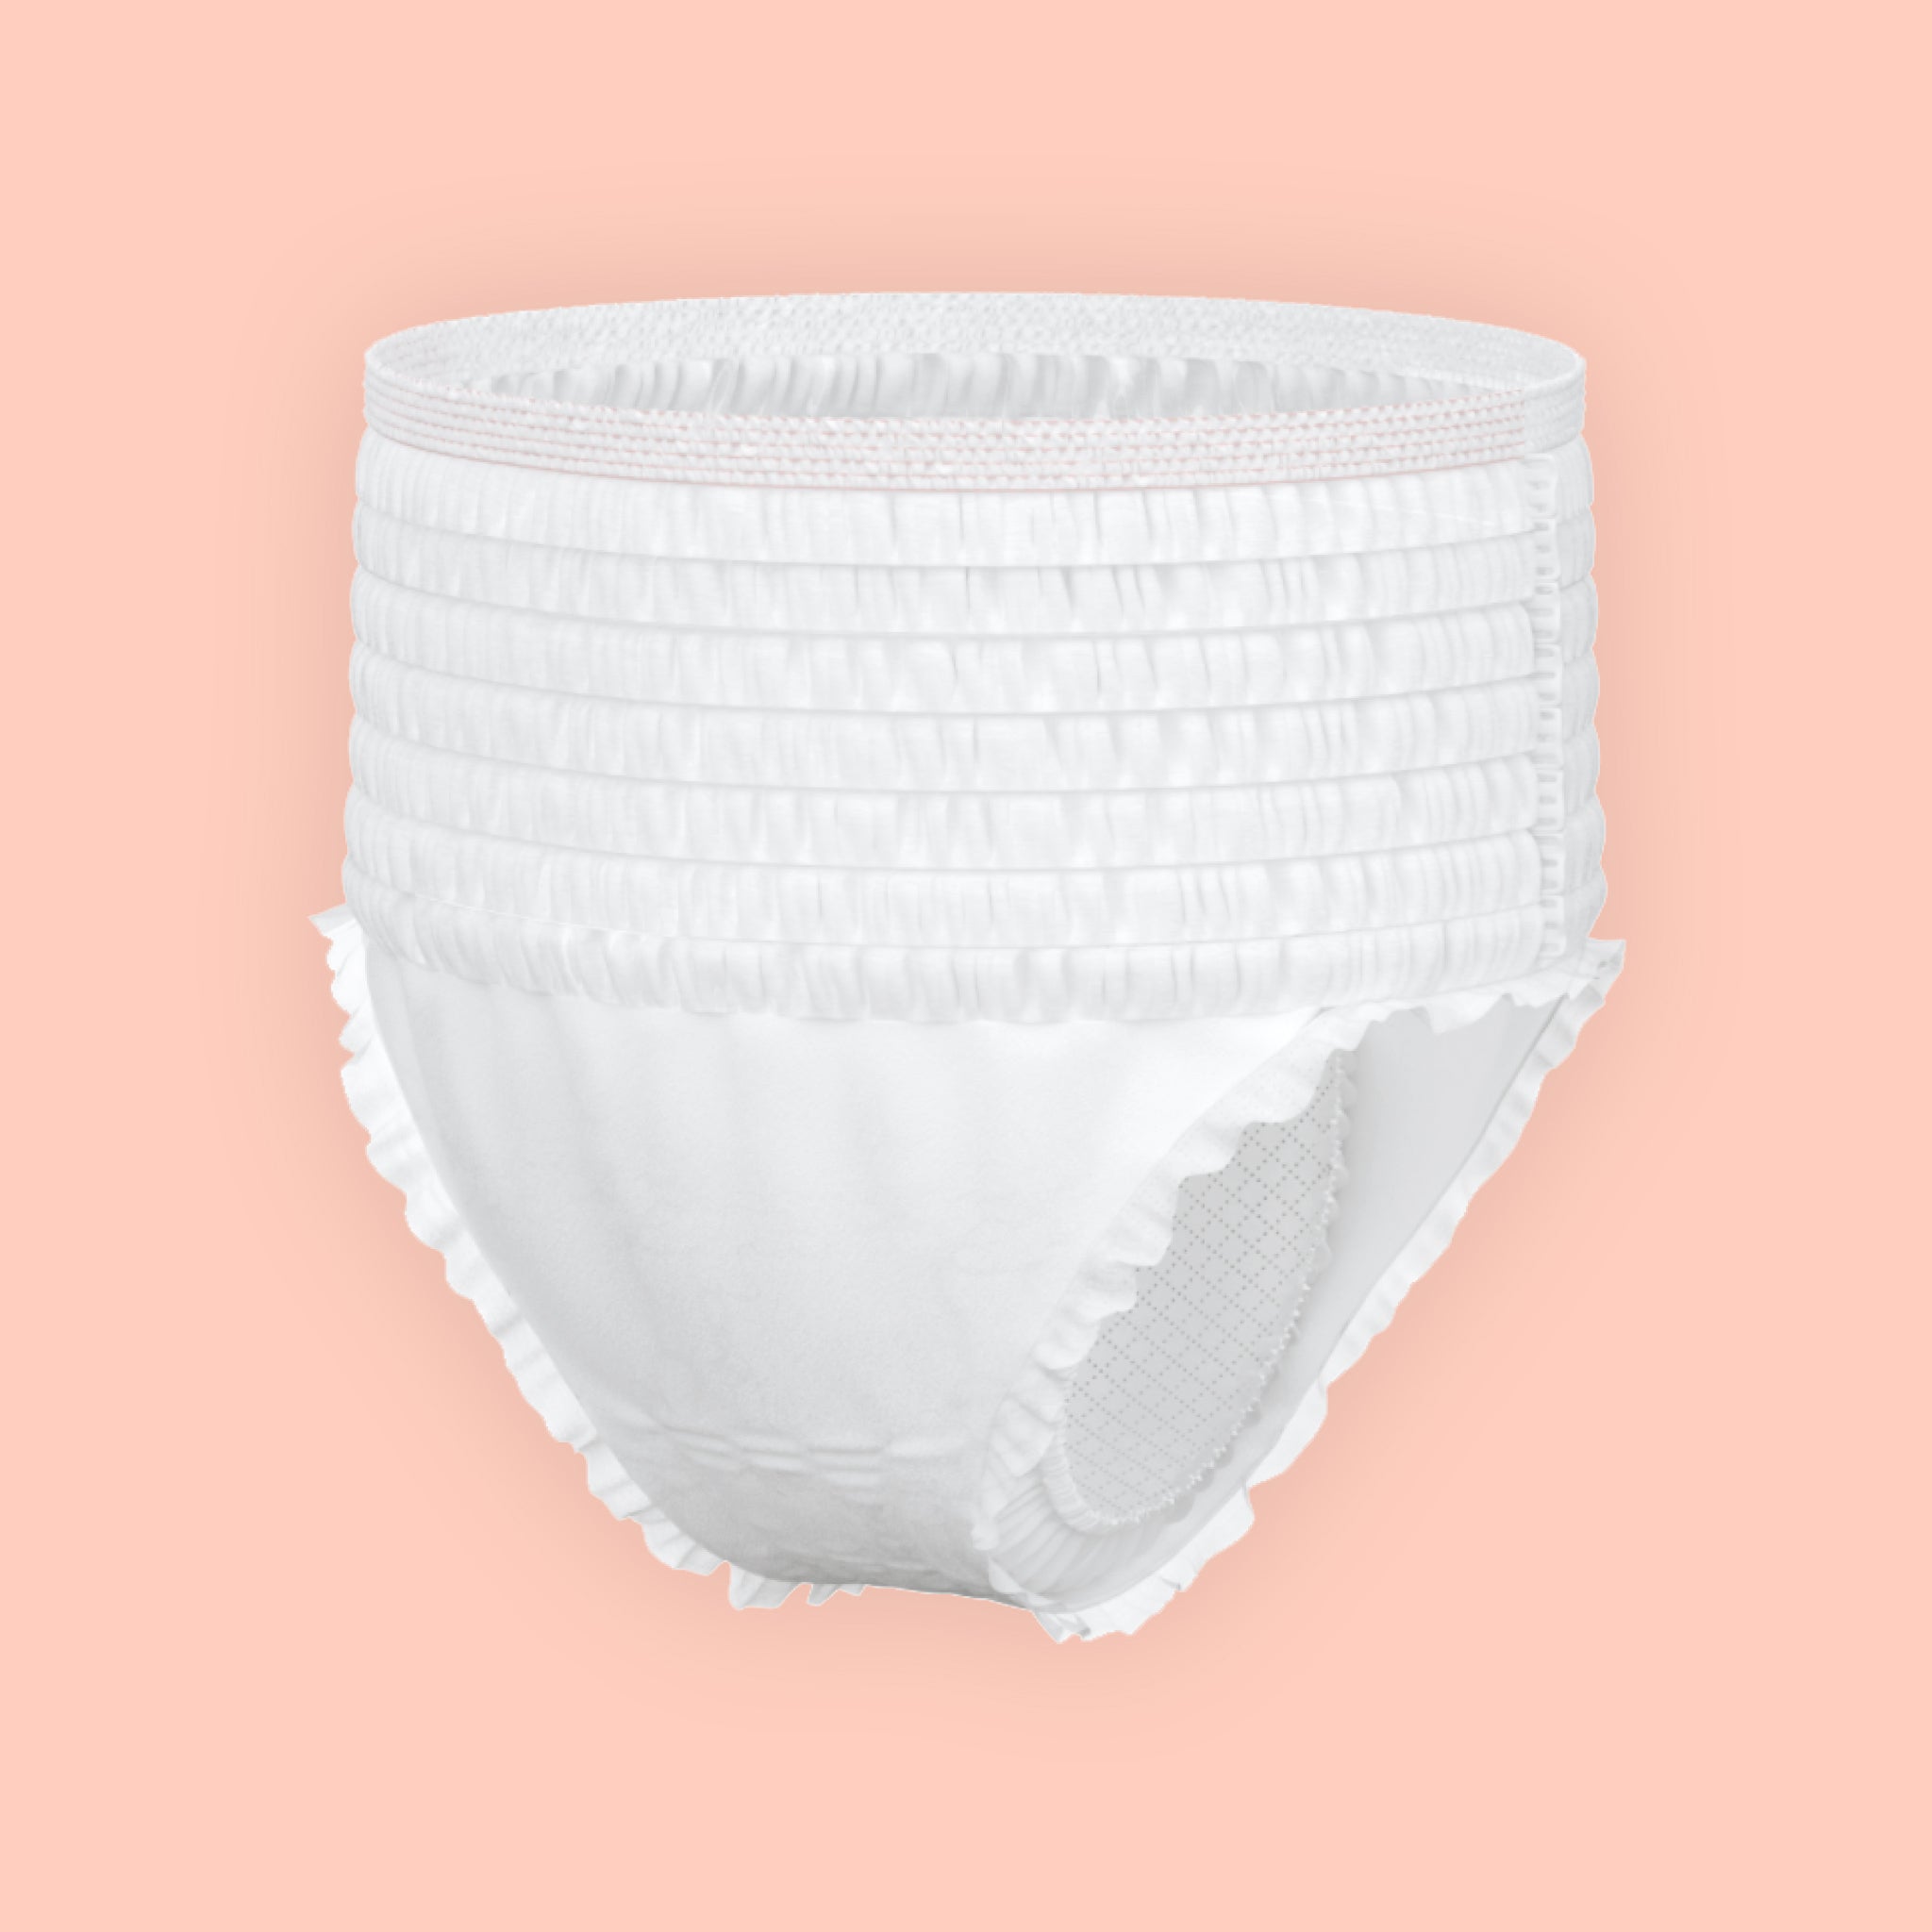 Rael Organic Cotton Cover Disposable Period Underwear Medium  8p(id:11850163) - EC21 Mobile